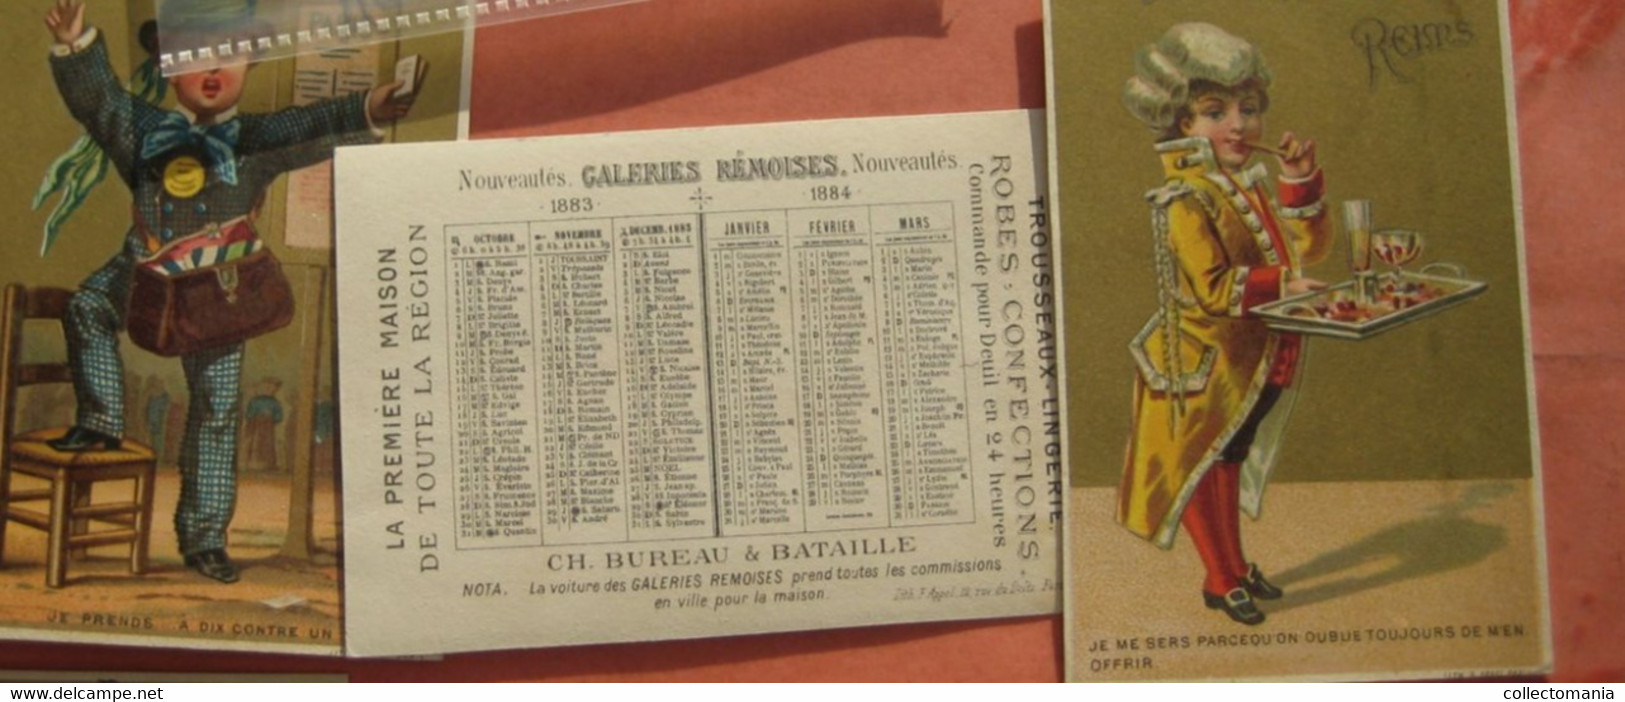 11 Cartes  Anno C1883 LITHO Chromos, Printer Imprimeur F.  APPEL Kalender - Very GOOD, 7cm5X11cm Reims Galeries REMOiSES - Kleinformat : ...-1900